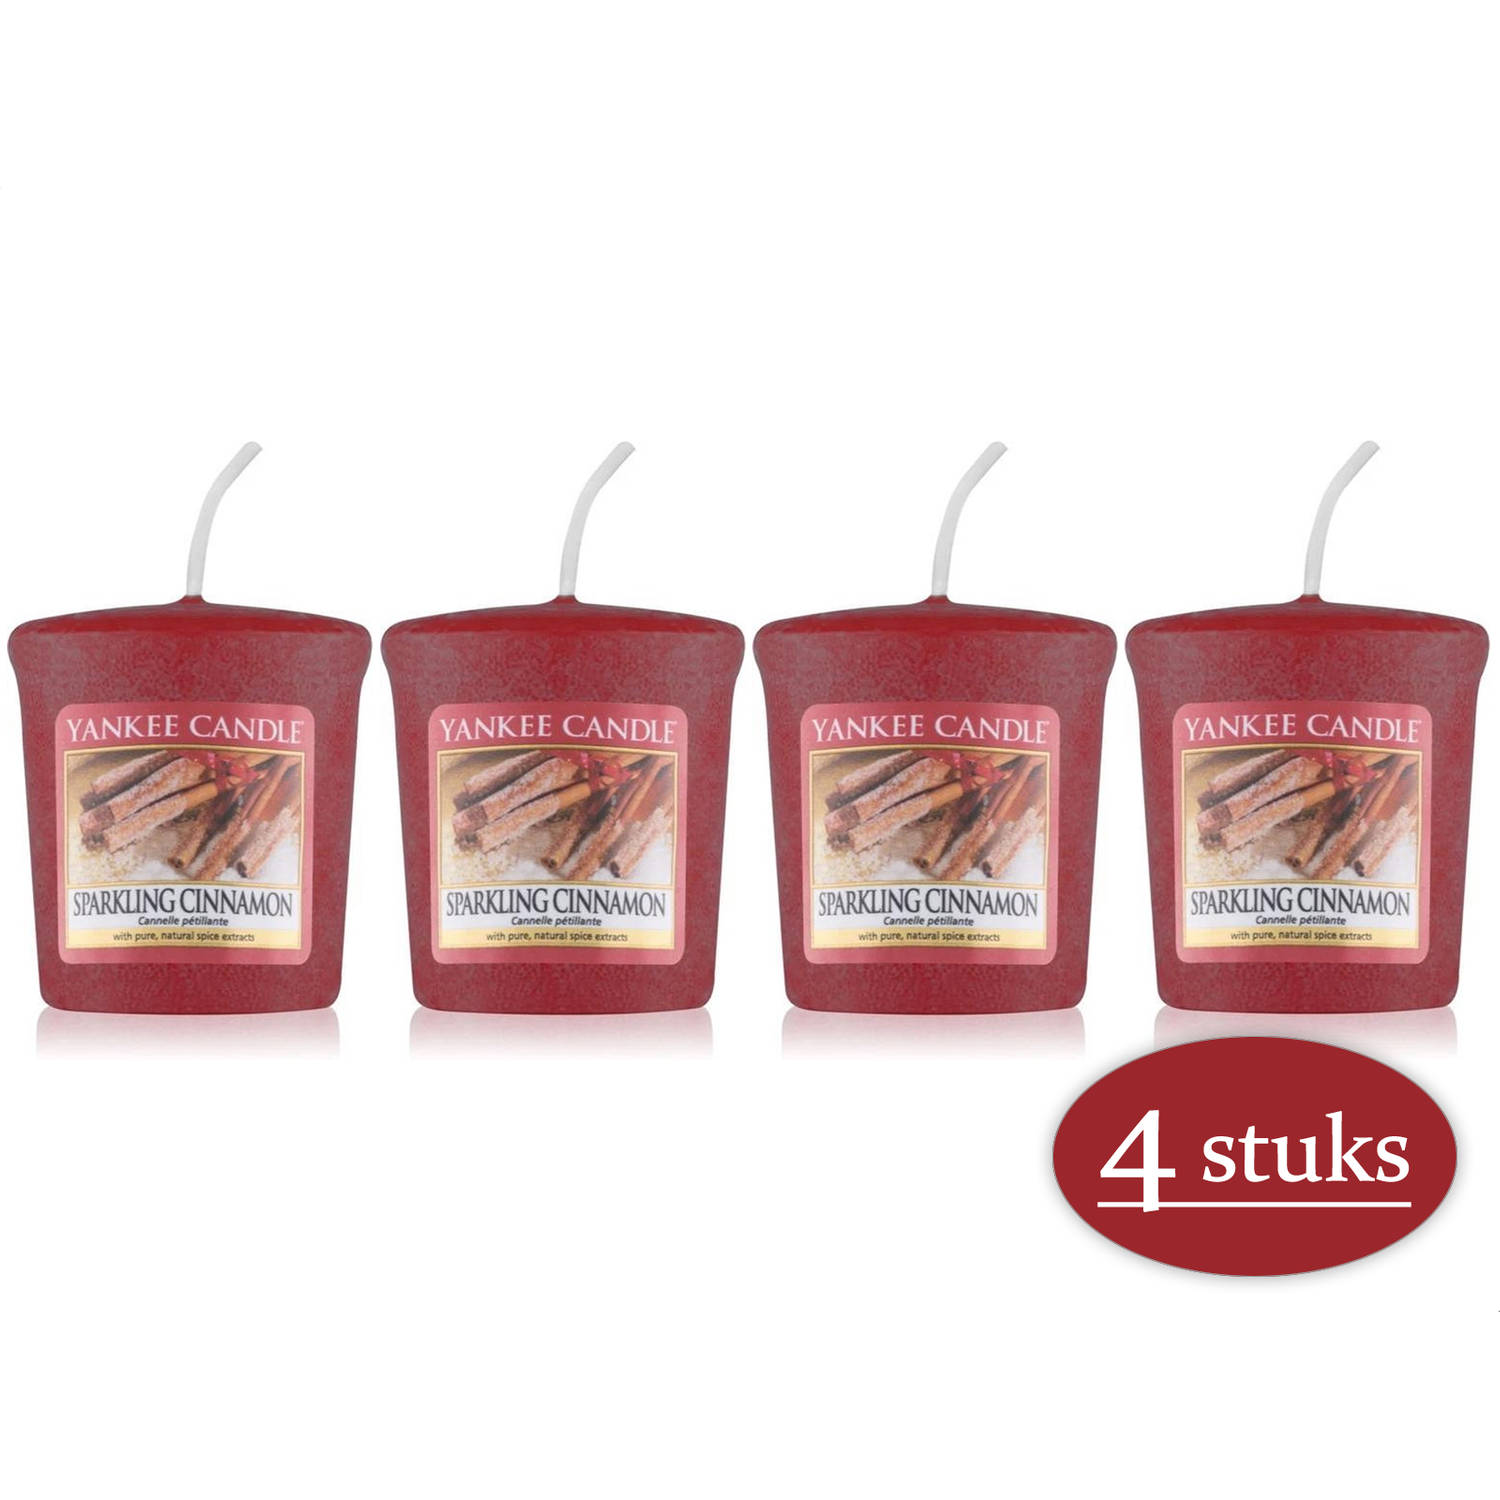 4 stuks Yankee Candle Sparkling Cinnamon Geurkaars Kerstkaars - Rood - 4 branduren - de geur van de winter